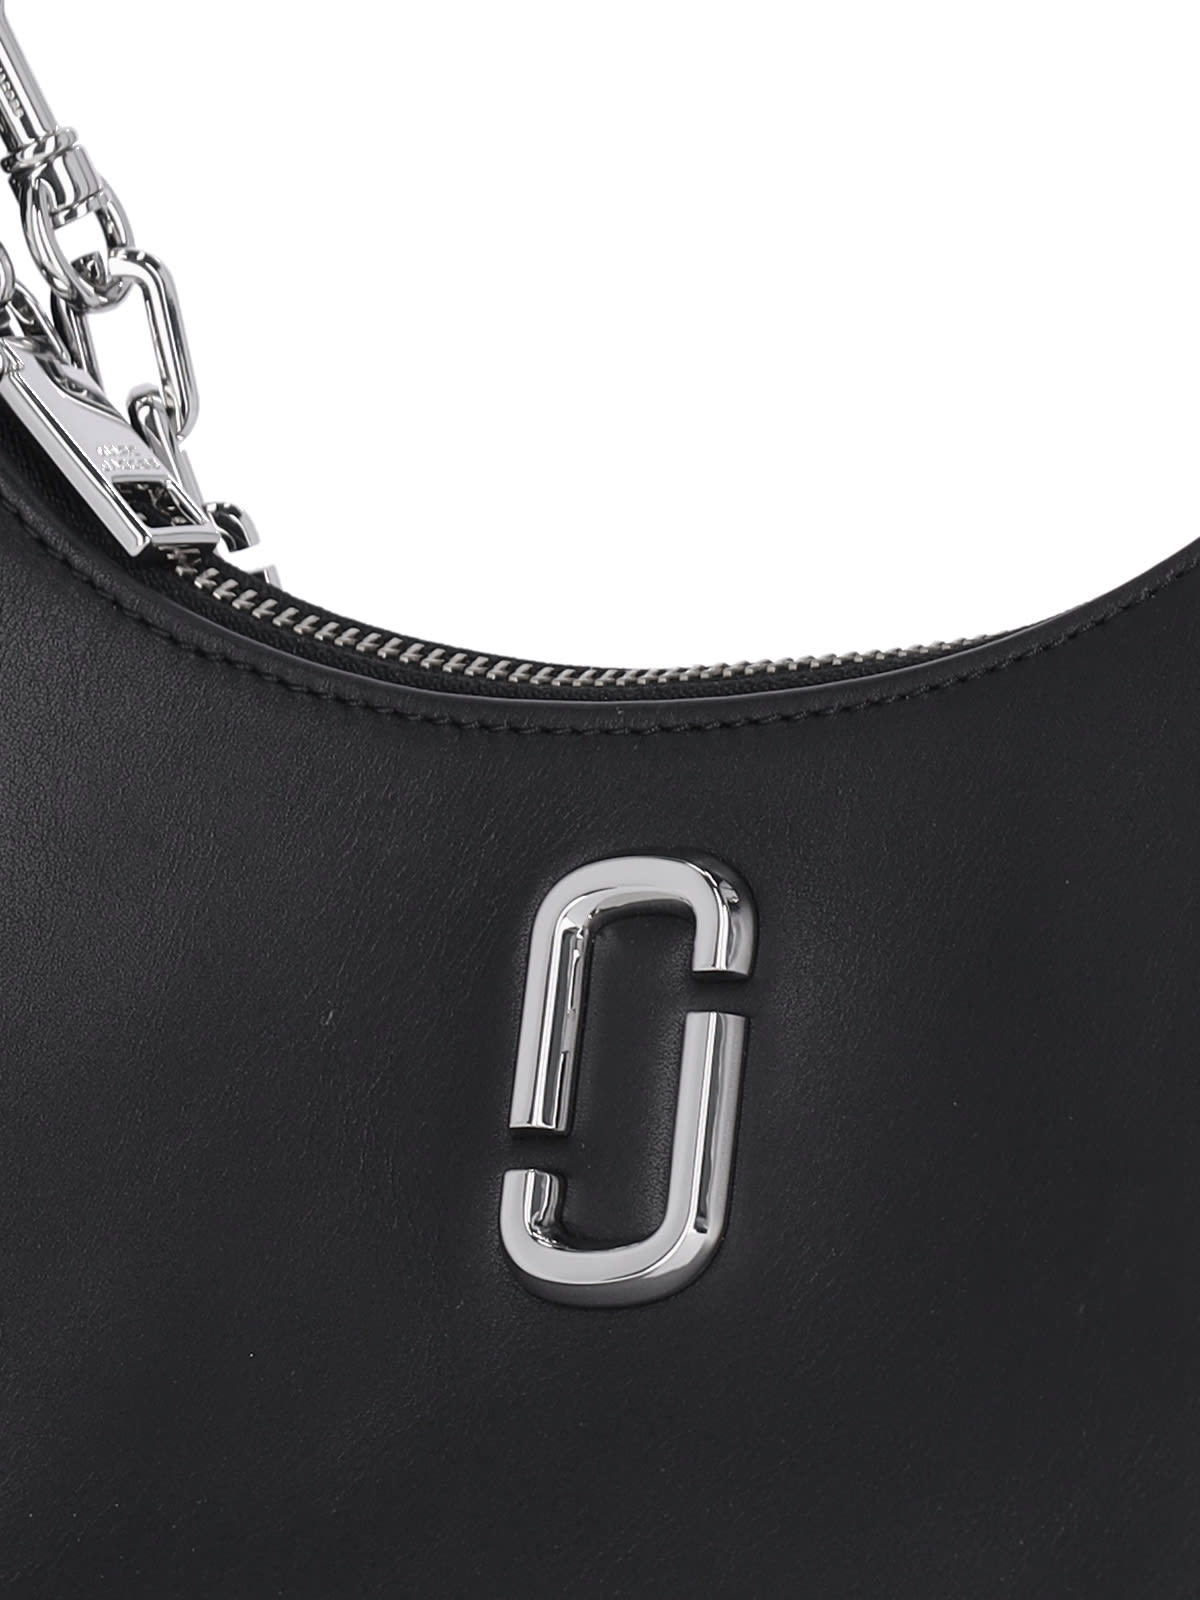 Shop Marc Jacobs Curve Shoulder Bag In Black